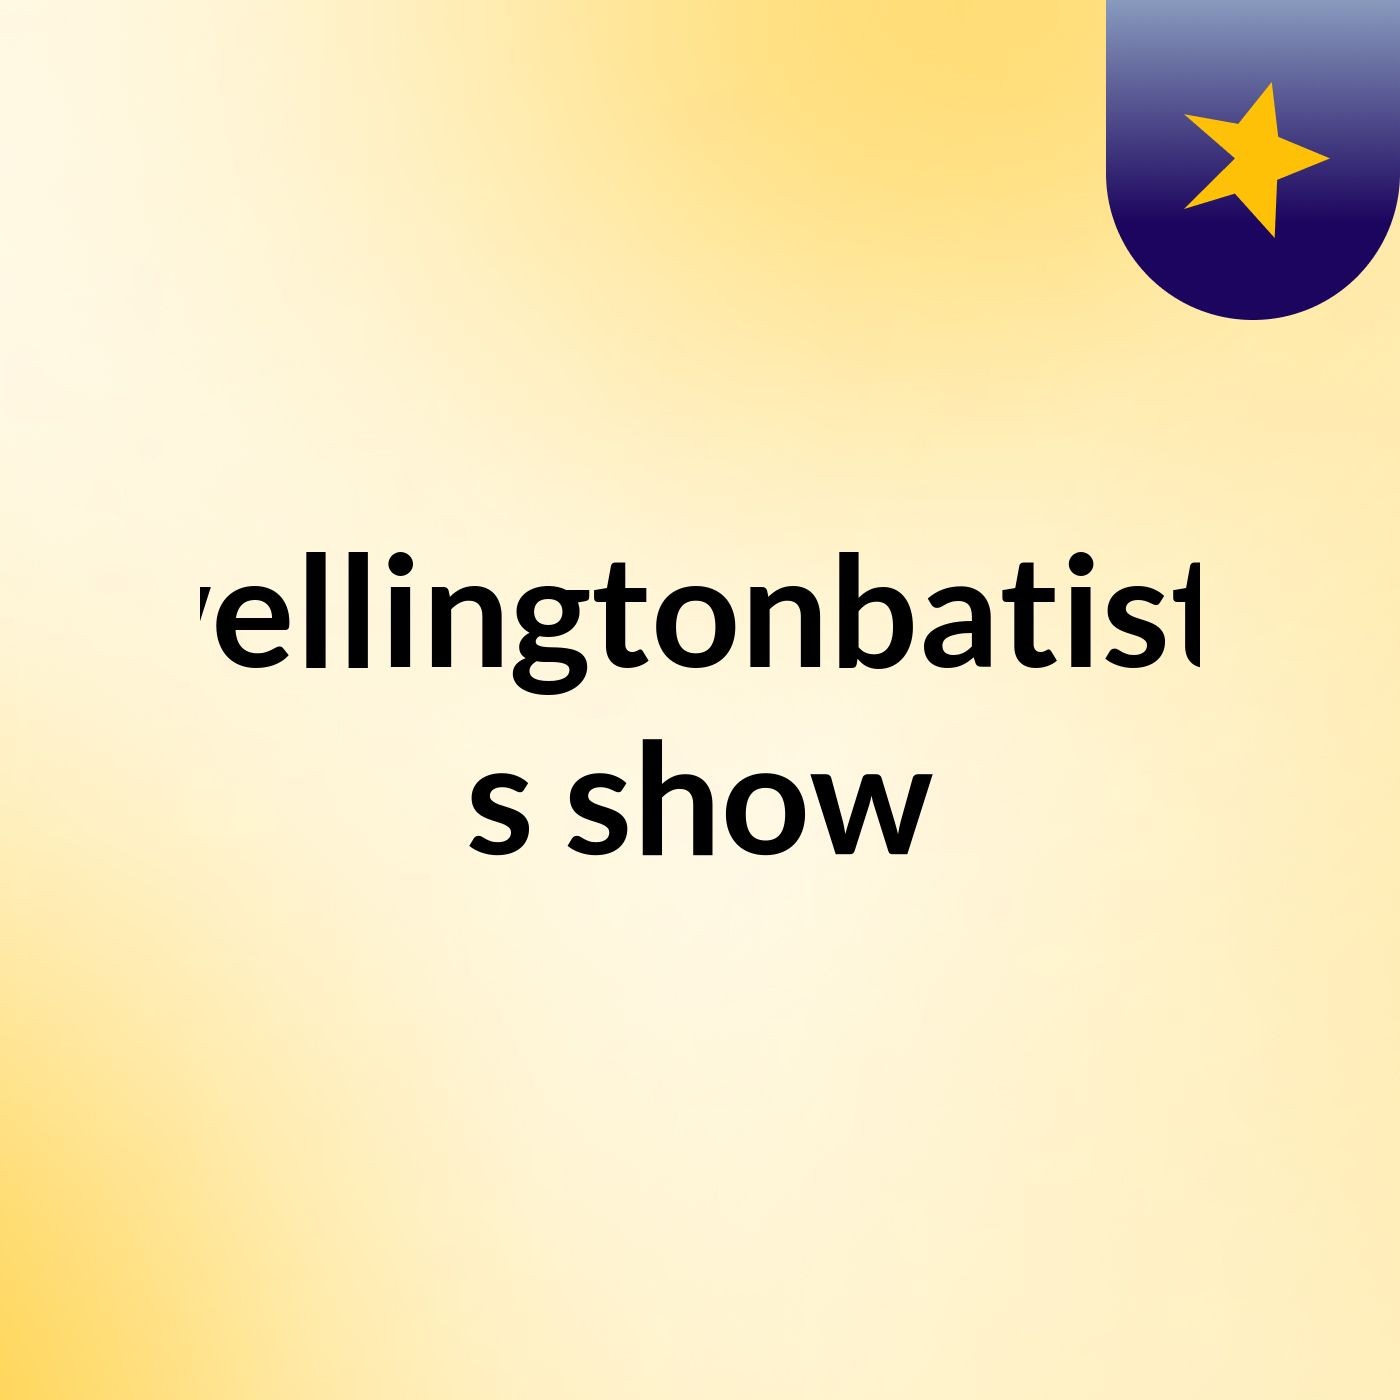 wellingtonbatista's show